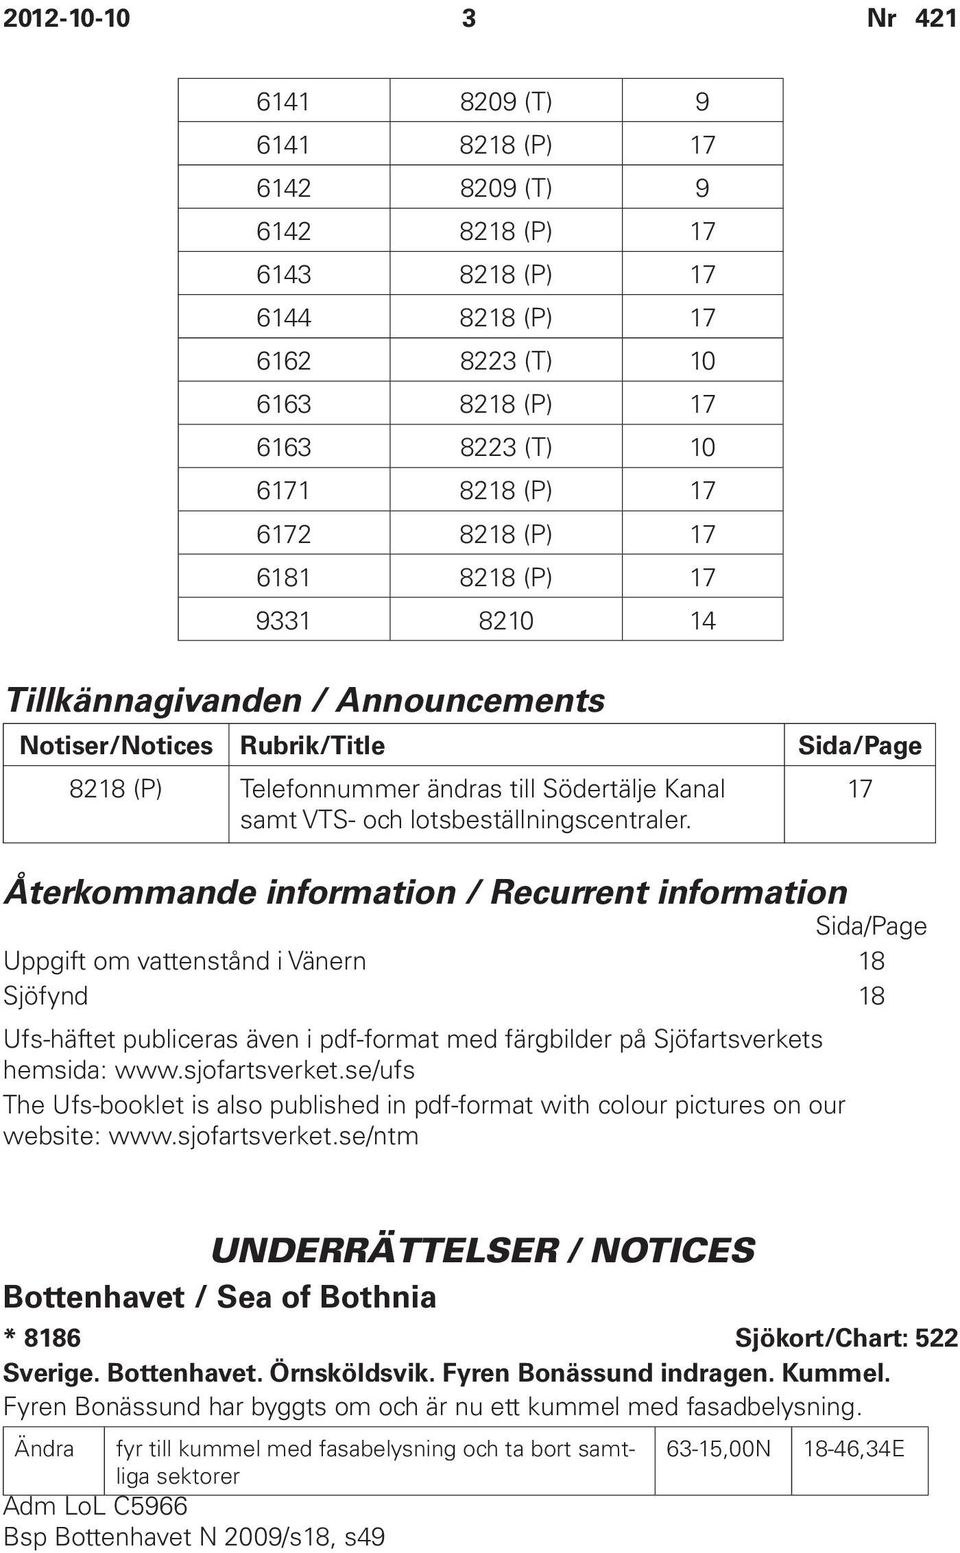 Återkommande information / Recurrent information Sida/Page Uppgift om vattenstånd i Vänern 18 Sjöfynd 18 Ufs-häftet publiceras även i pdf-format med färgbilder på Sjöfartsverkets hemsida: www.